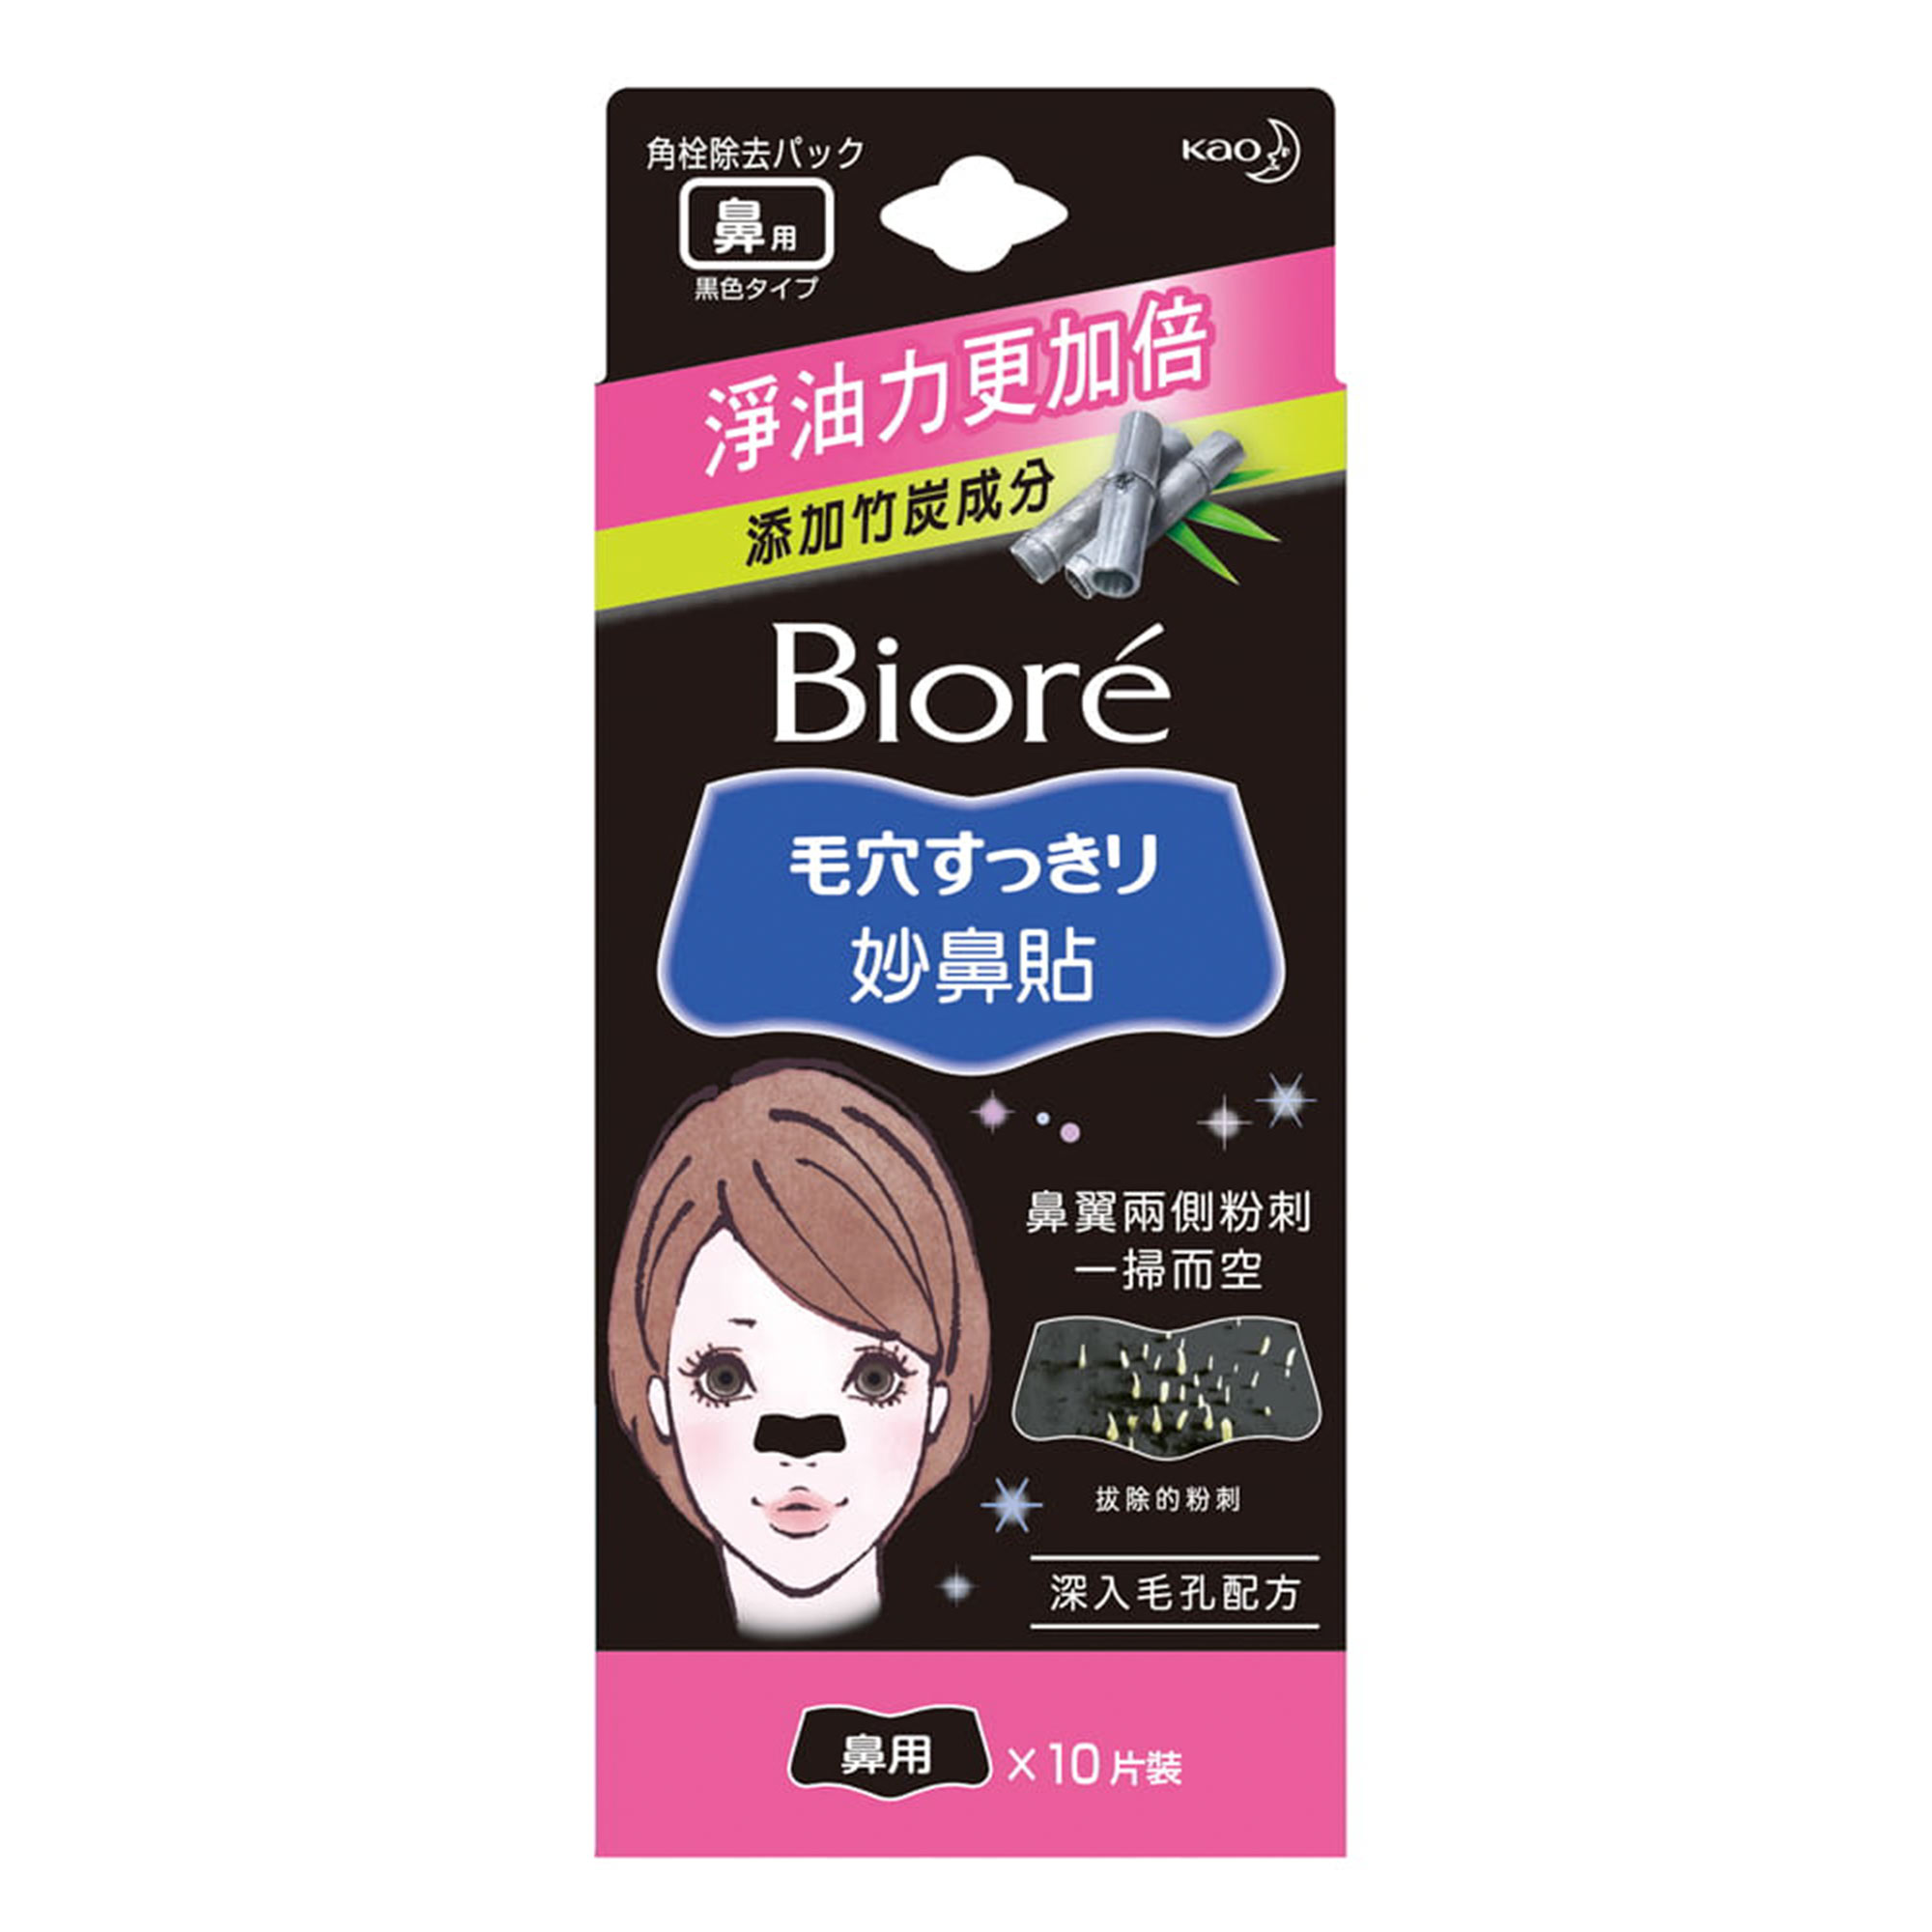 Очищающие полоски для носа Biore  с бамбуковым углем 10 шт полоски для квиллинга 120 полосок плотность 120 гр